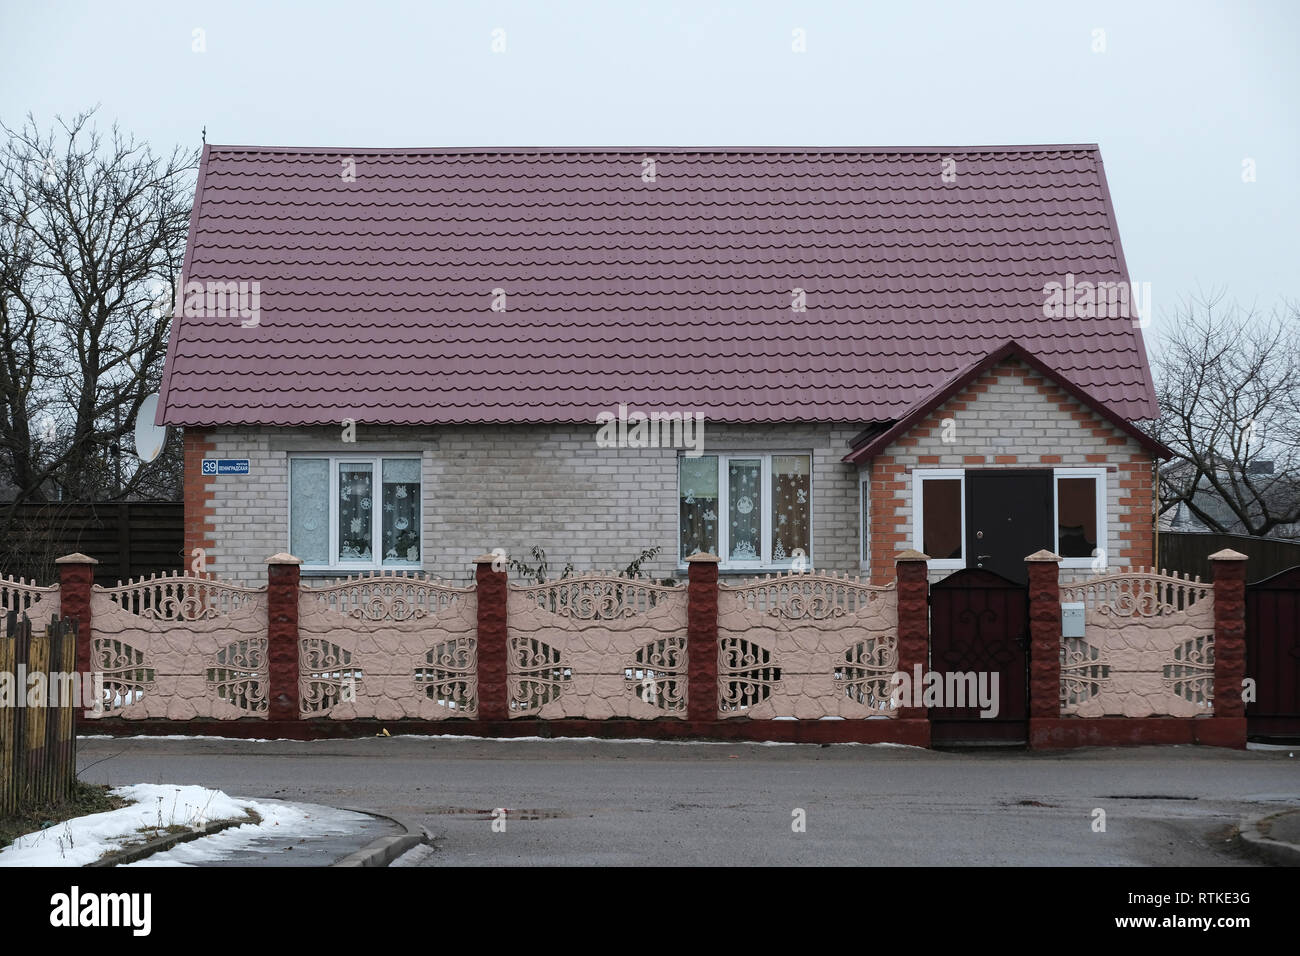 Une maison en brique typique dans la ville de Mir, dans le district de Karelicy la voblast de Hrodna, en Biélorussie Banque D'Images